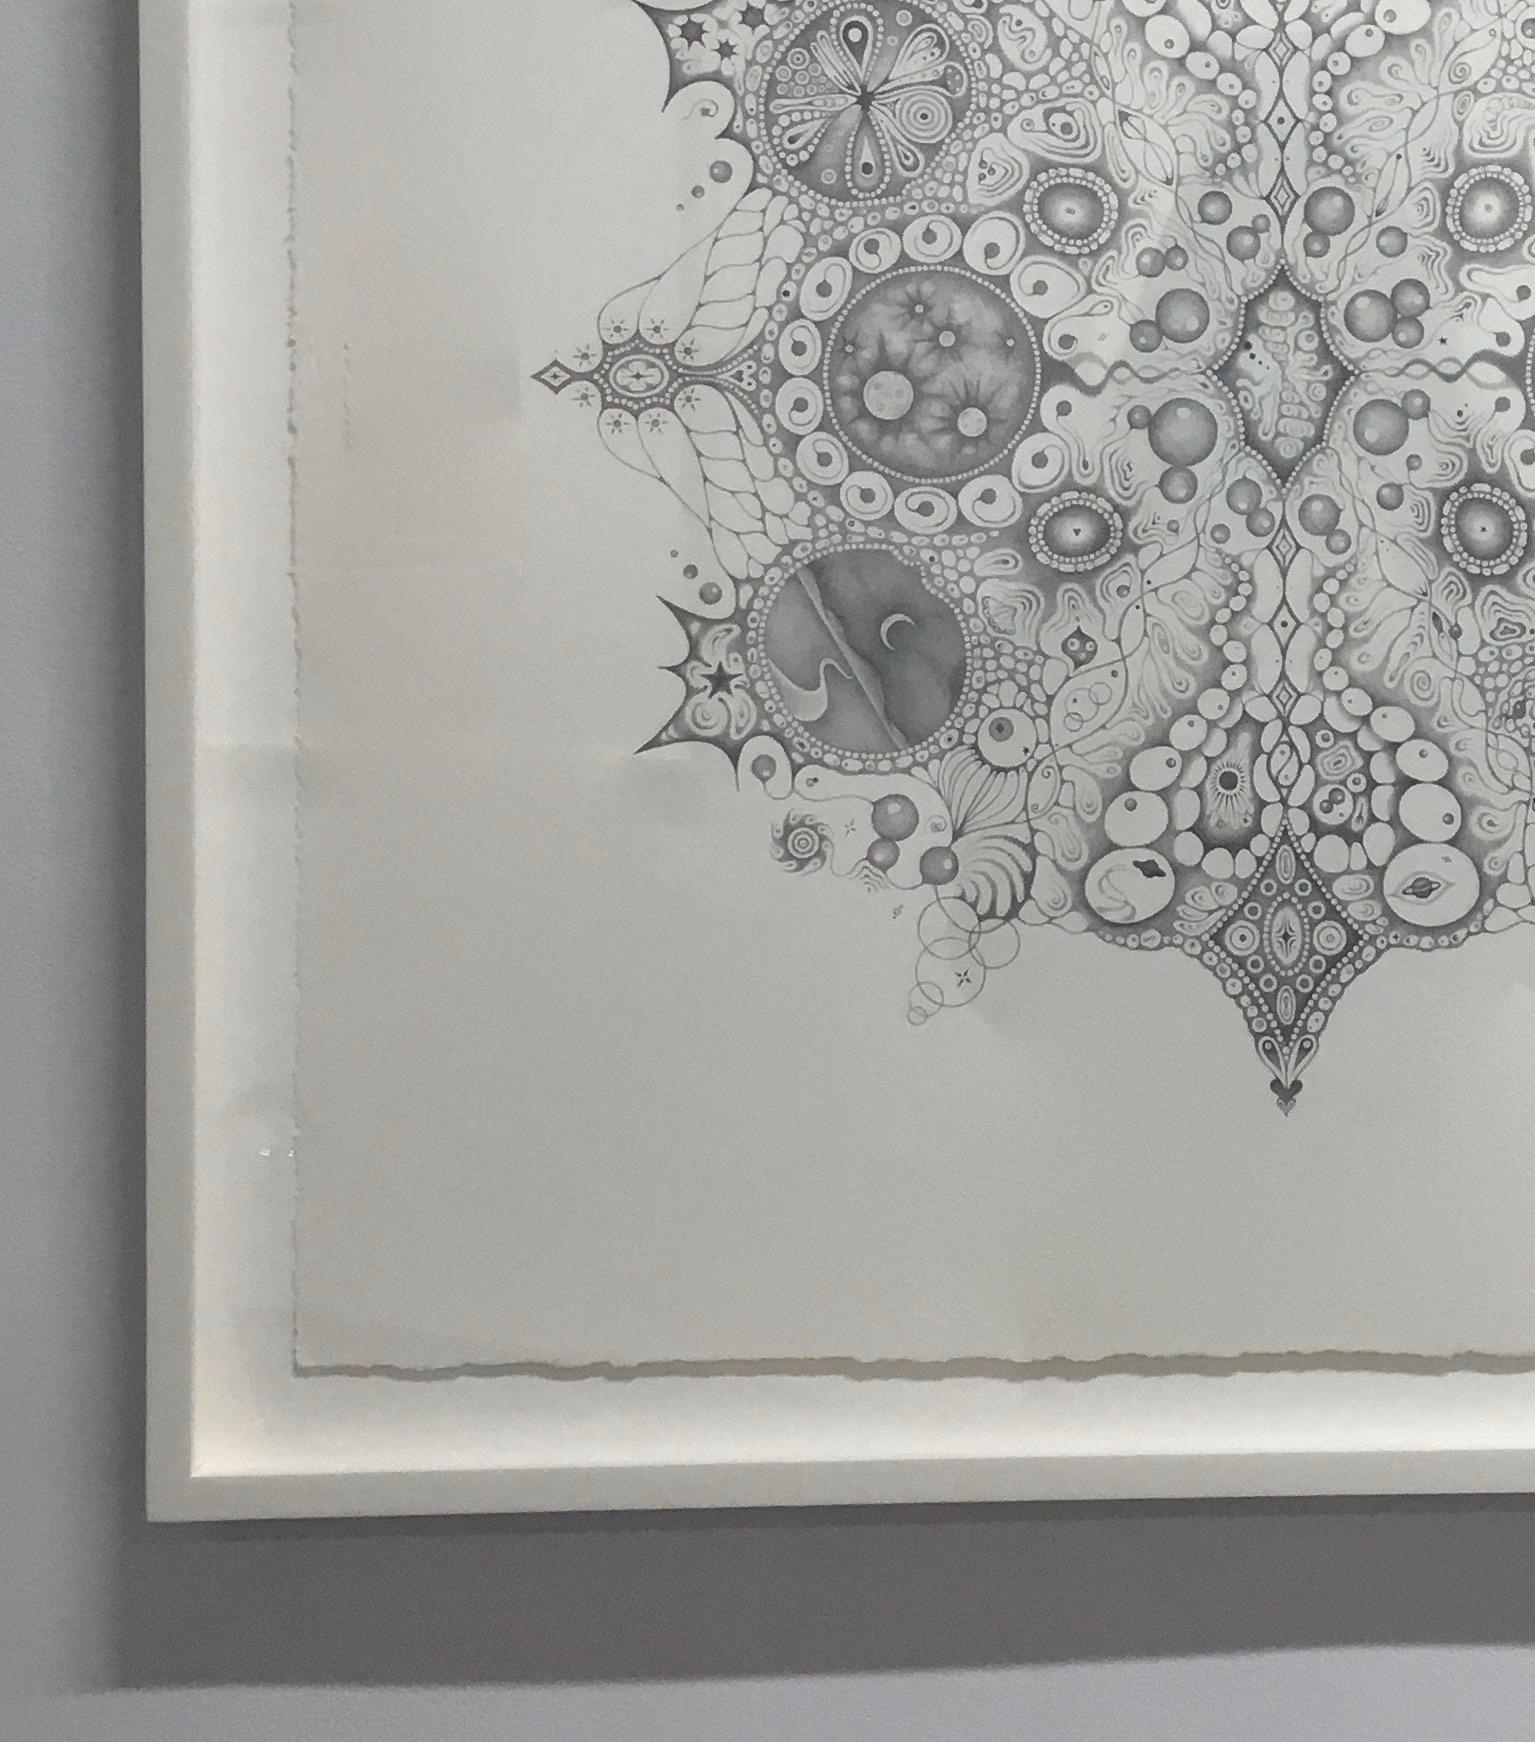 Snowflakes 125 Oneness, Planets, Crescent Moon, Patterns Mandala Pencil Drawing - Contemporary Art by Michiyo Ihara